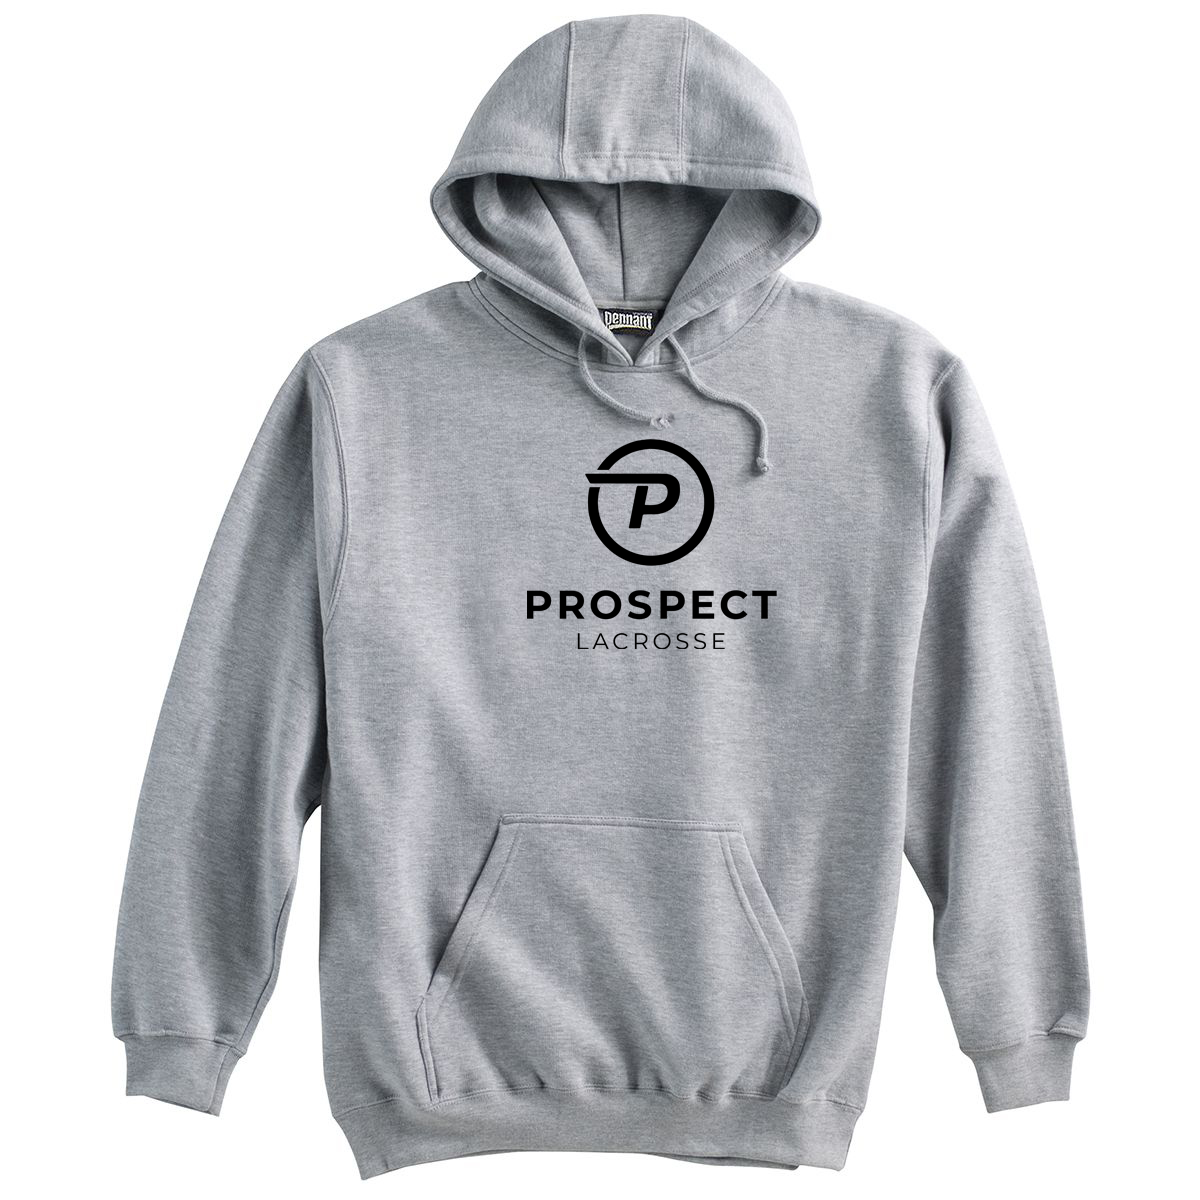 Prospect Lacrosse Sweatshirt